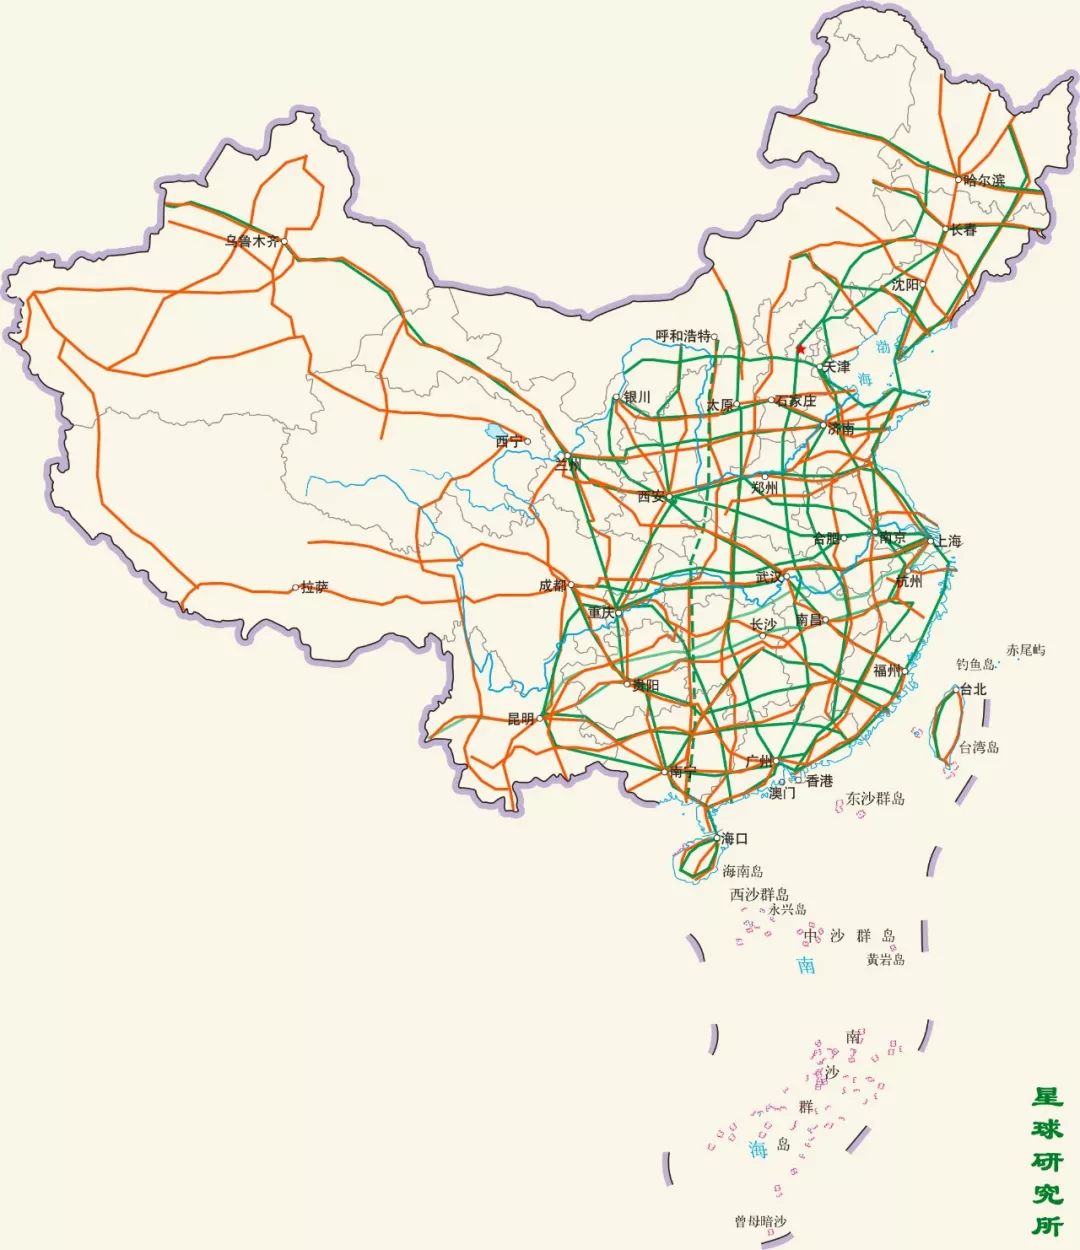 占春运总人次的80%以上;截至2016年底,中国公路总里程约470万千米